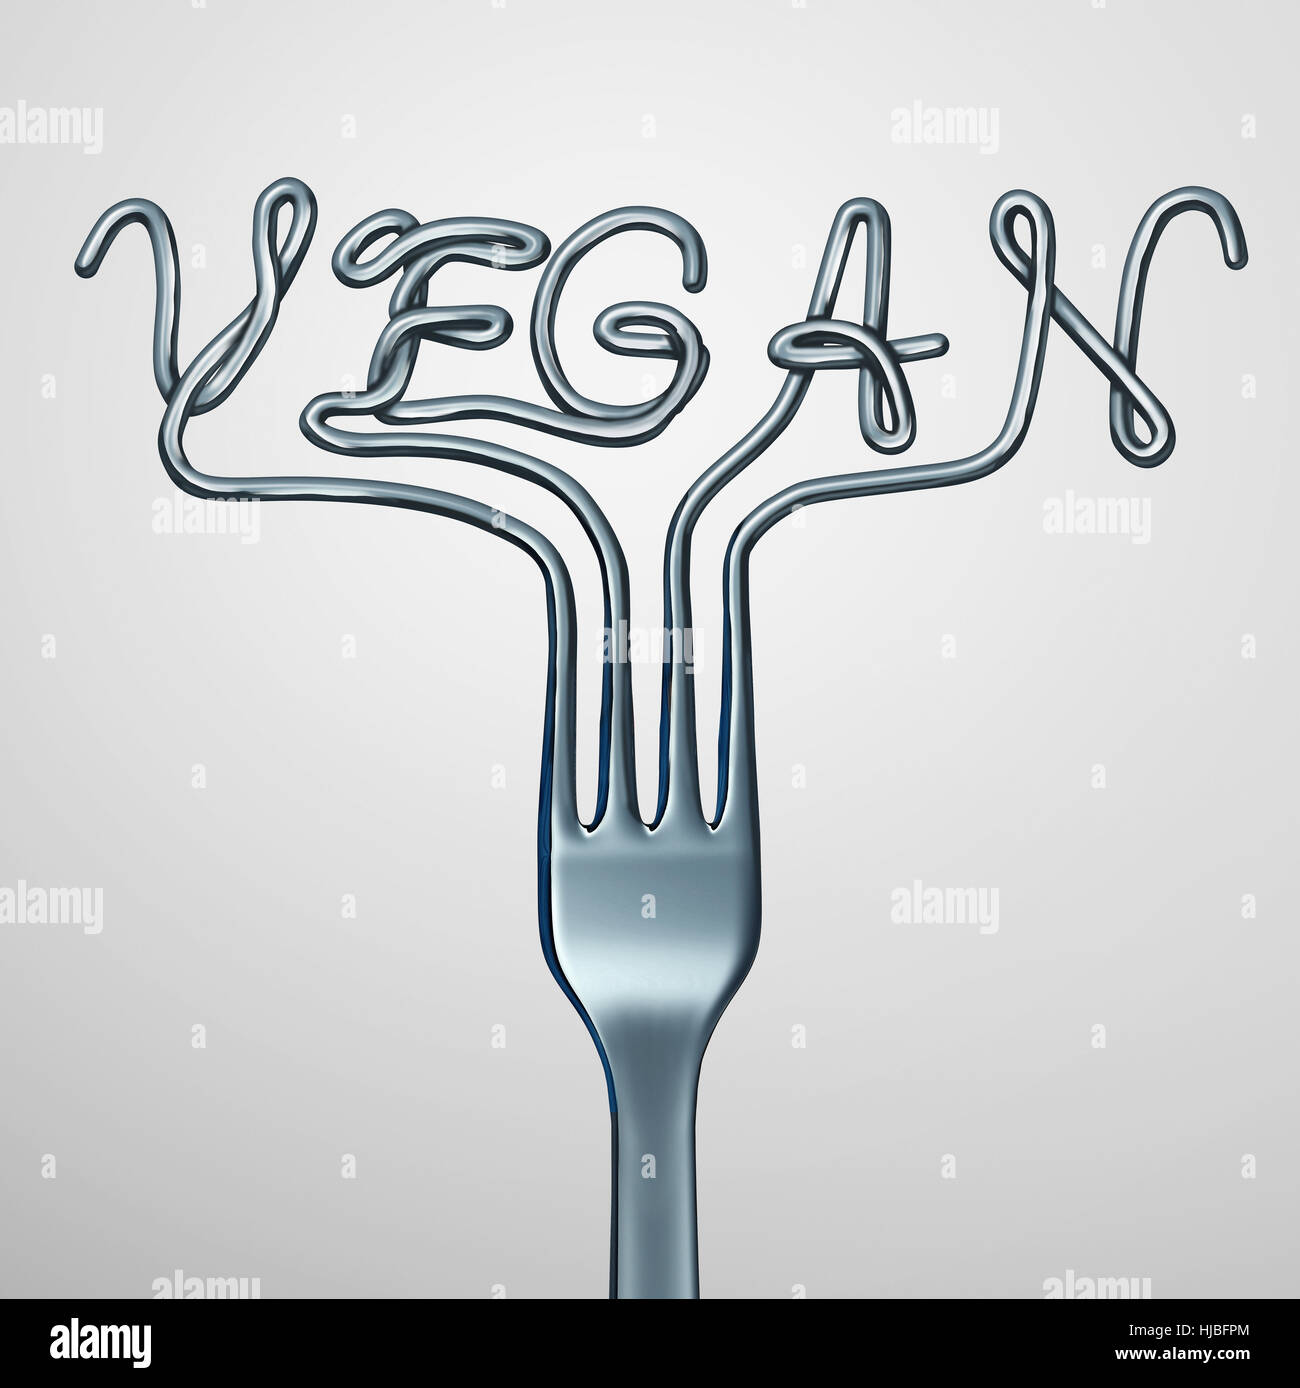 Vegan-Gabel mit einem Textsymbol für eine vegetarische Ernährung Konzept als ein Küchengerät, frische grüne Nutritios Pflanze darstellt basierte Lebensmittel zu essen, wie ein 3D Stockfoto